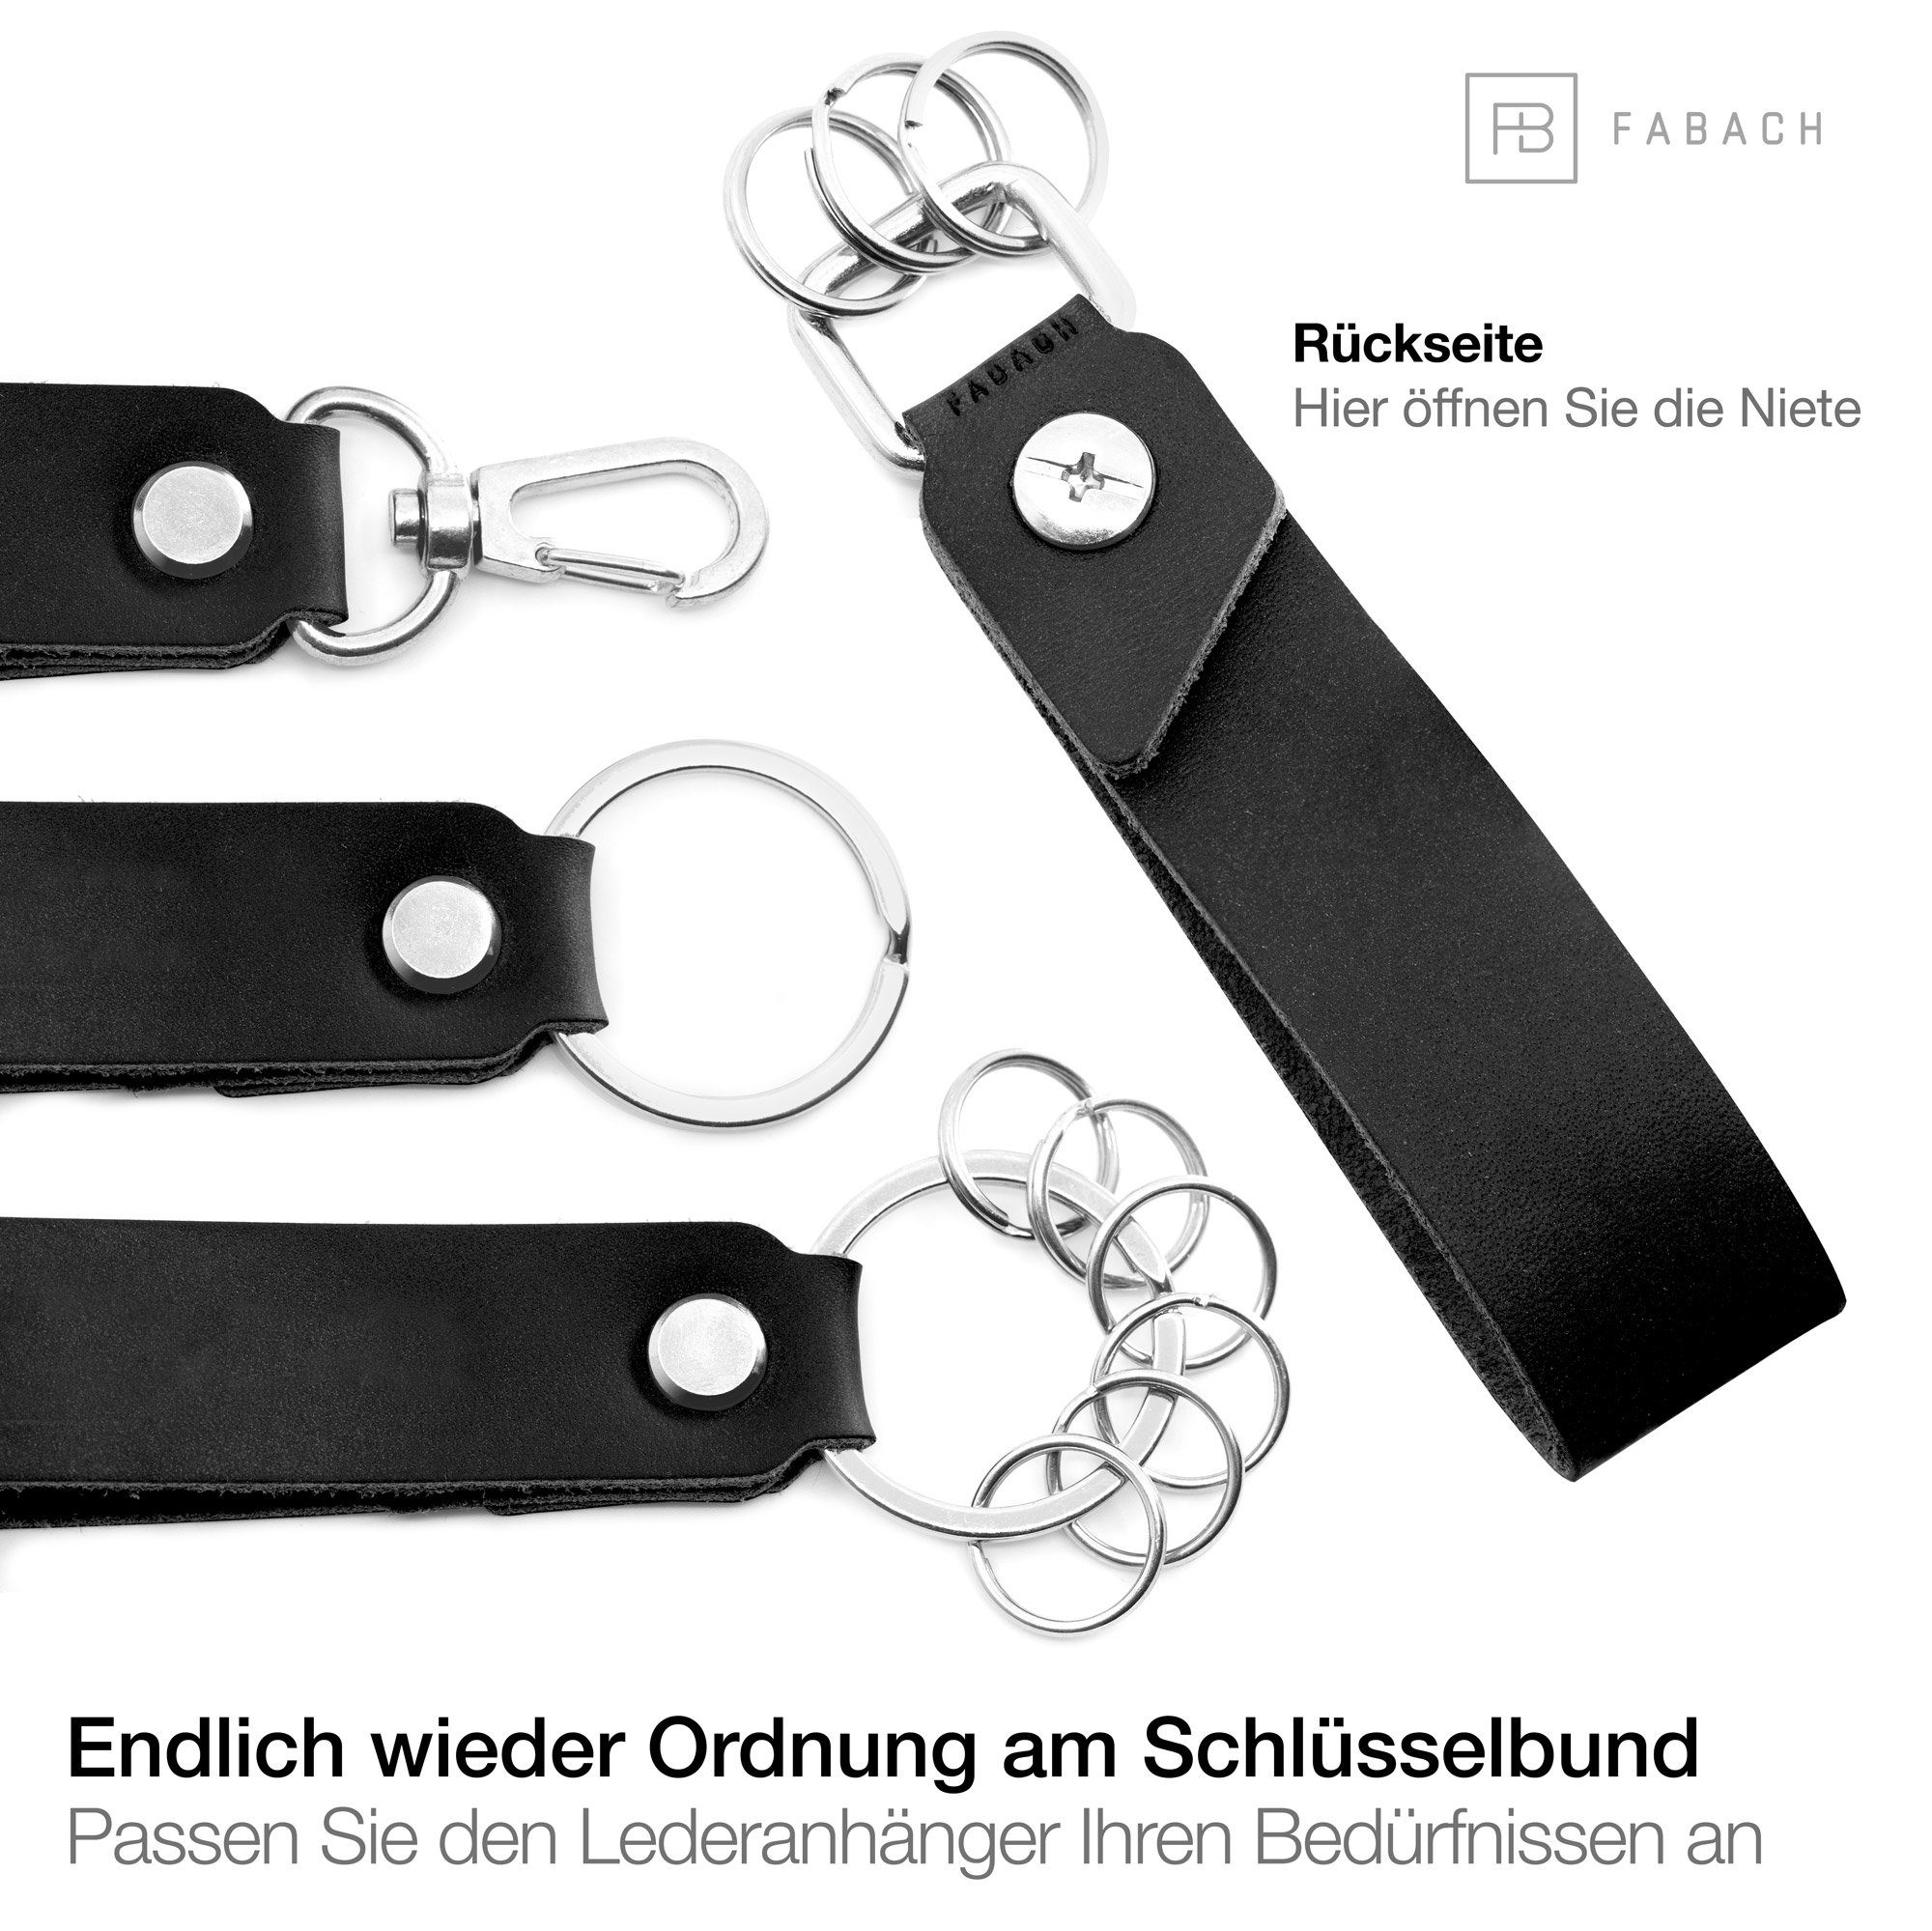 "Fahr FABACH - Gravur vorsichtig" wechselbarer Schwarz Leder Schlüsselring Schlüsselanhänger Anhänger